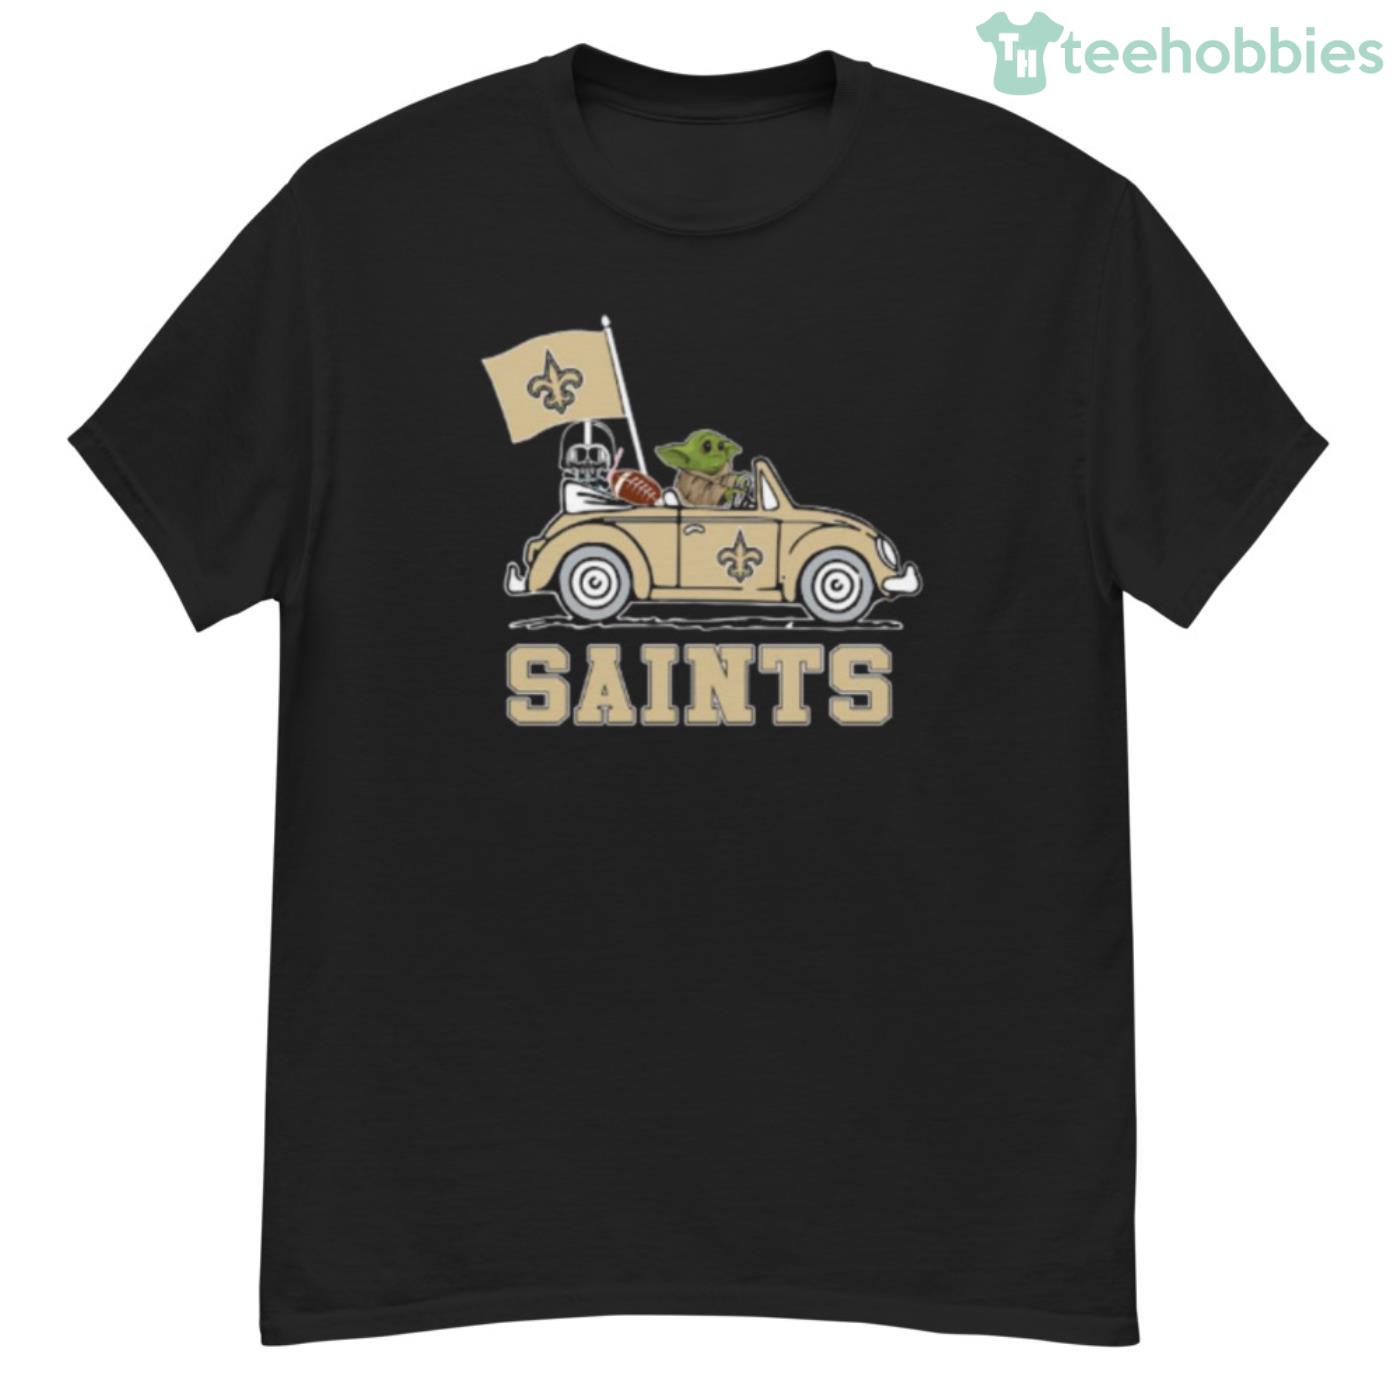 NFL Football New Orleans Saints Darth Vader Baby Yoda Driving Star Wars  Shirt